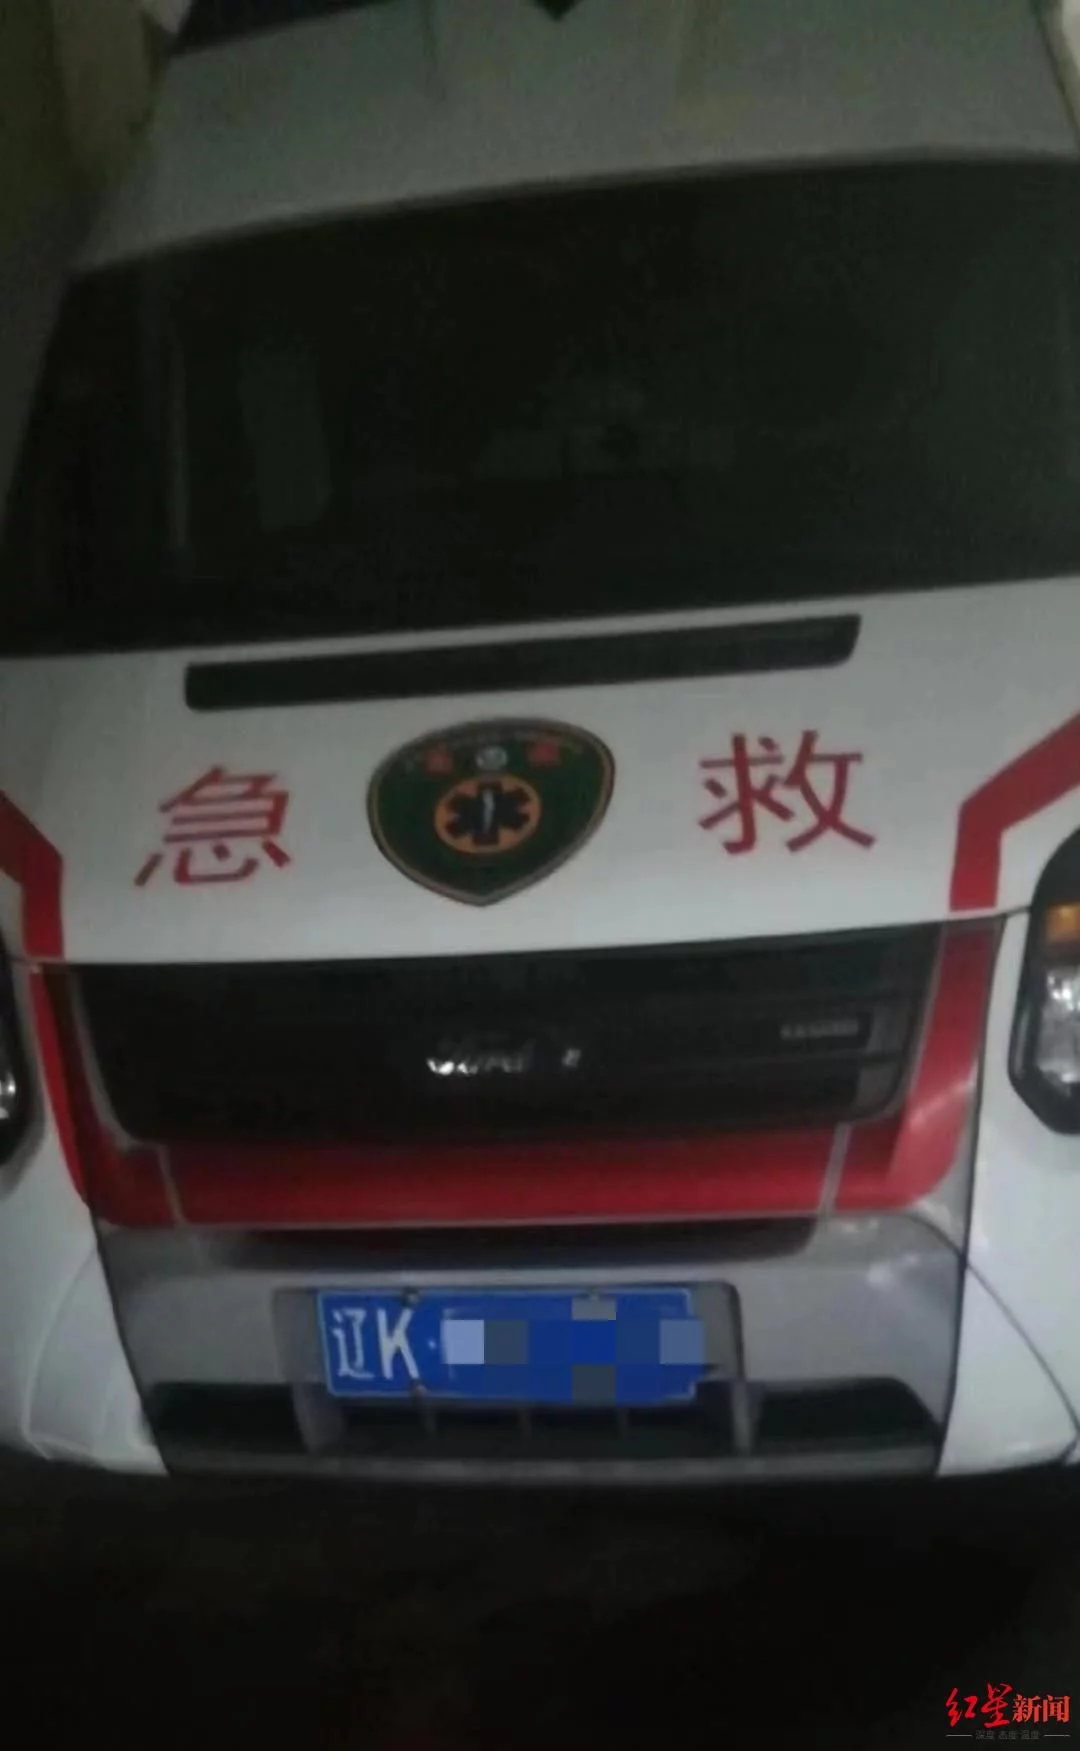 吉林女子重病轉運北京急救，車行途中身亡，衛健局 ：“救護車”無執醫資質